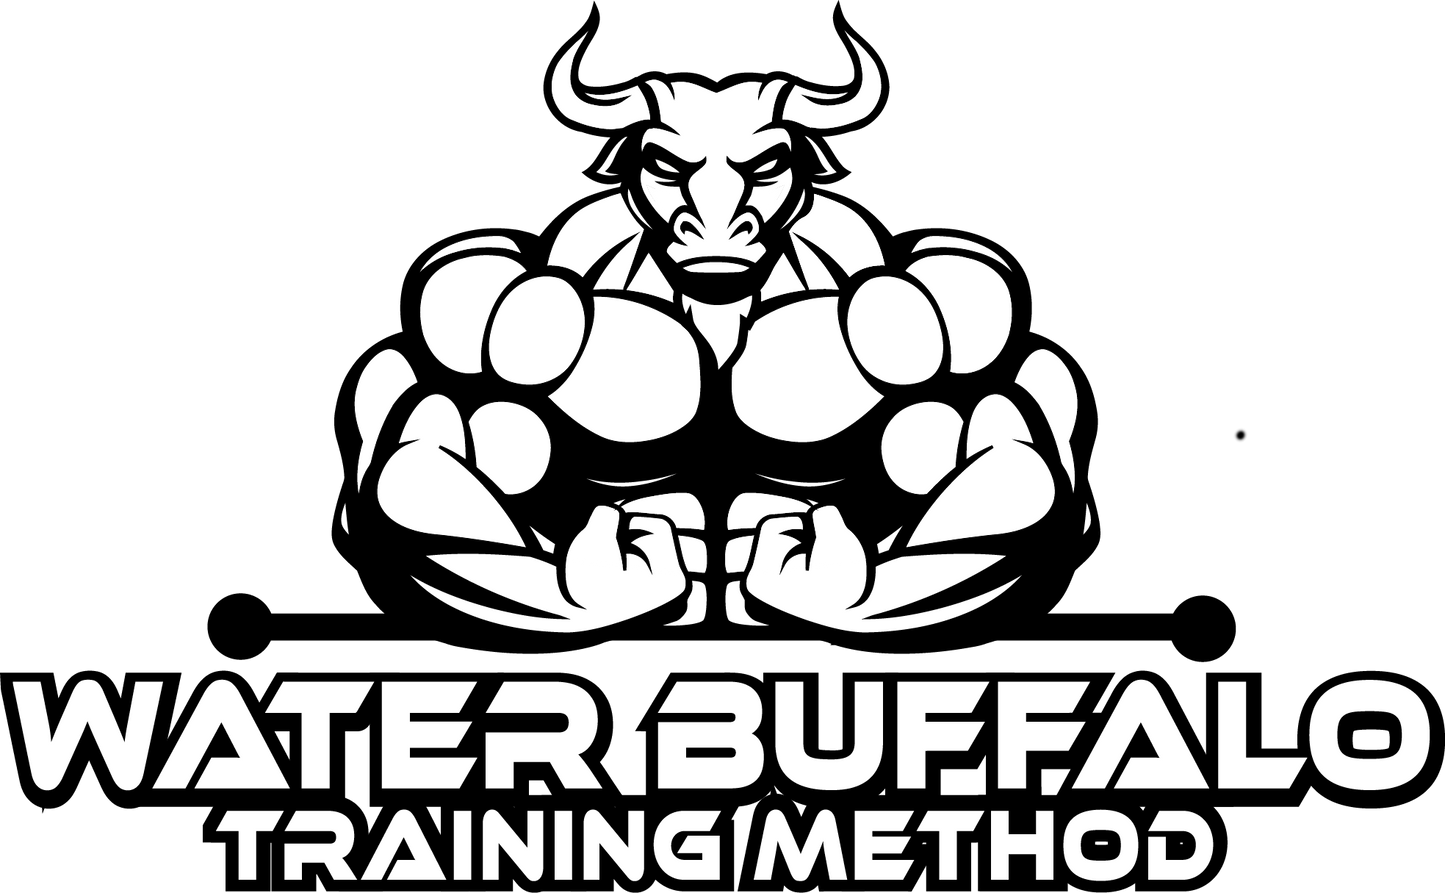 Water Buffalo Training Method: Phase 3